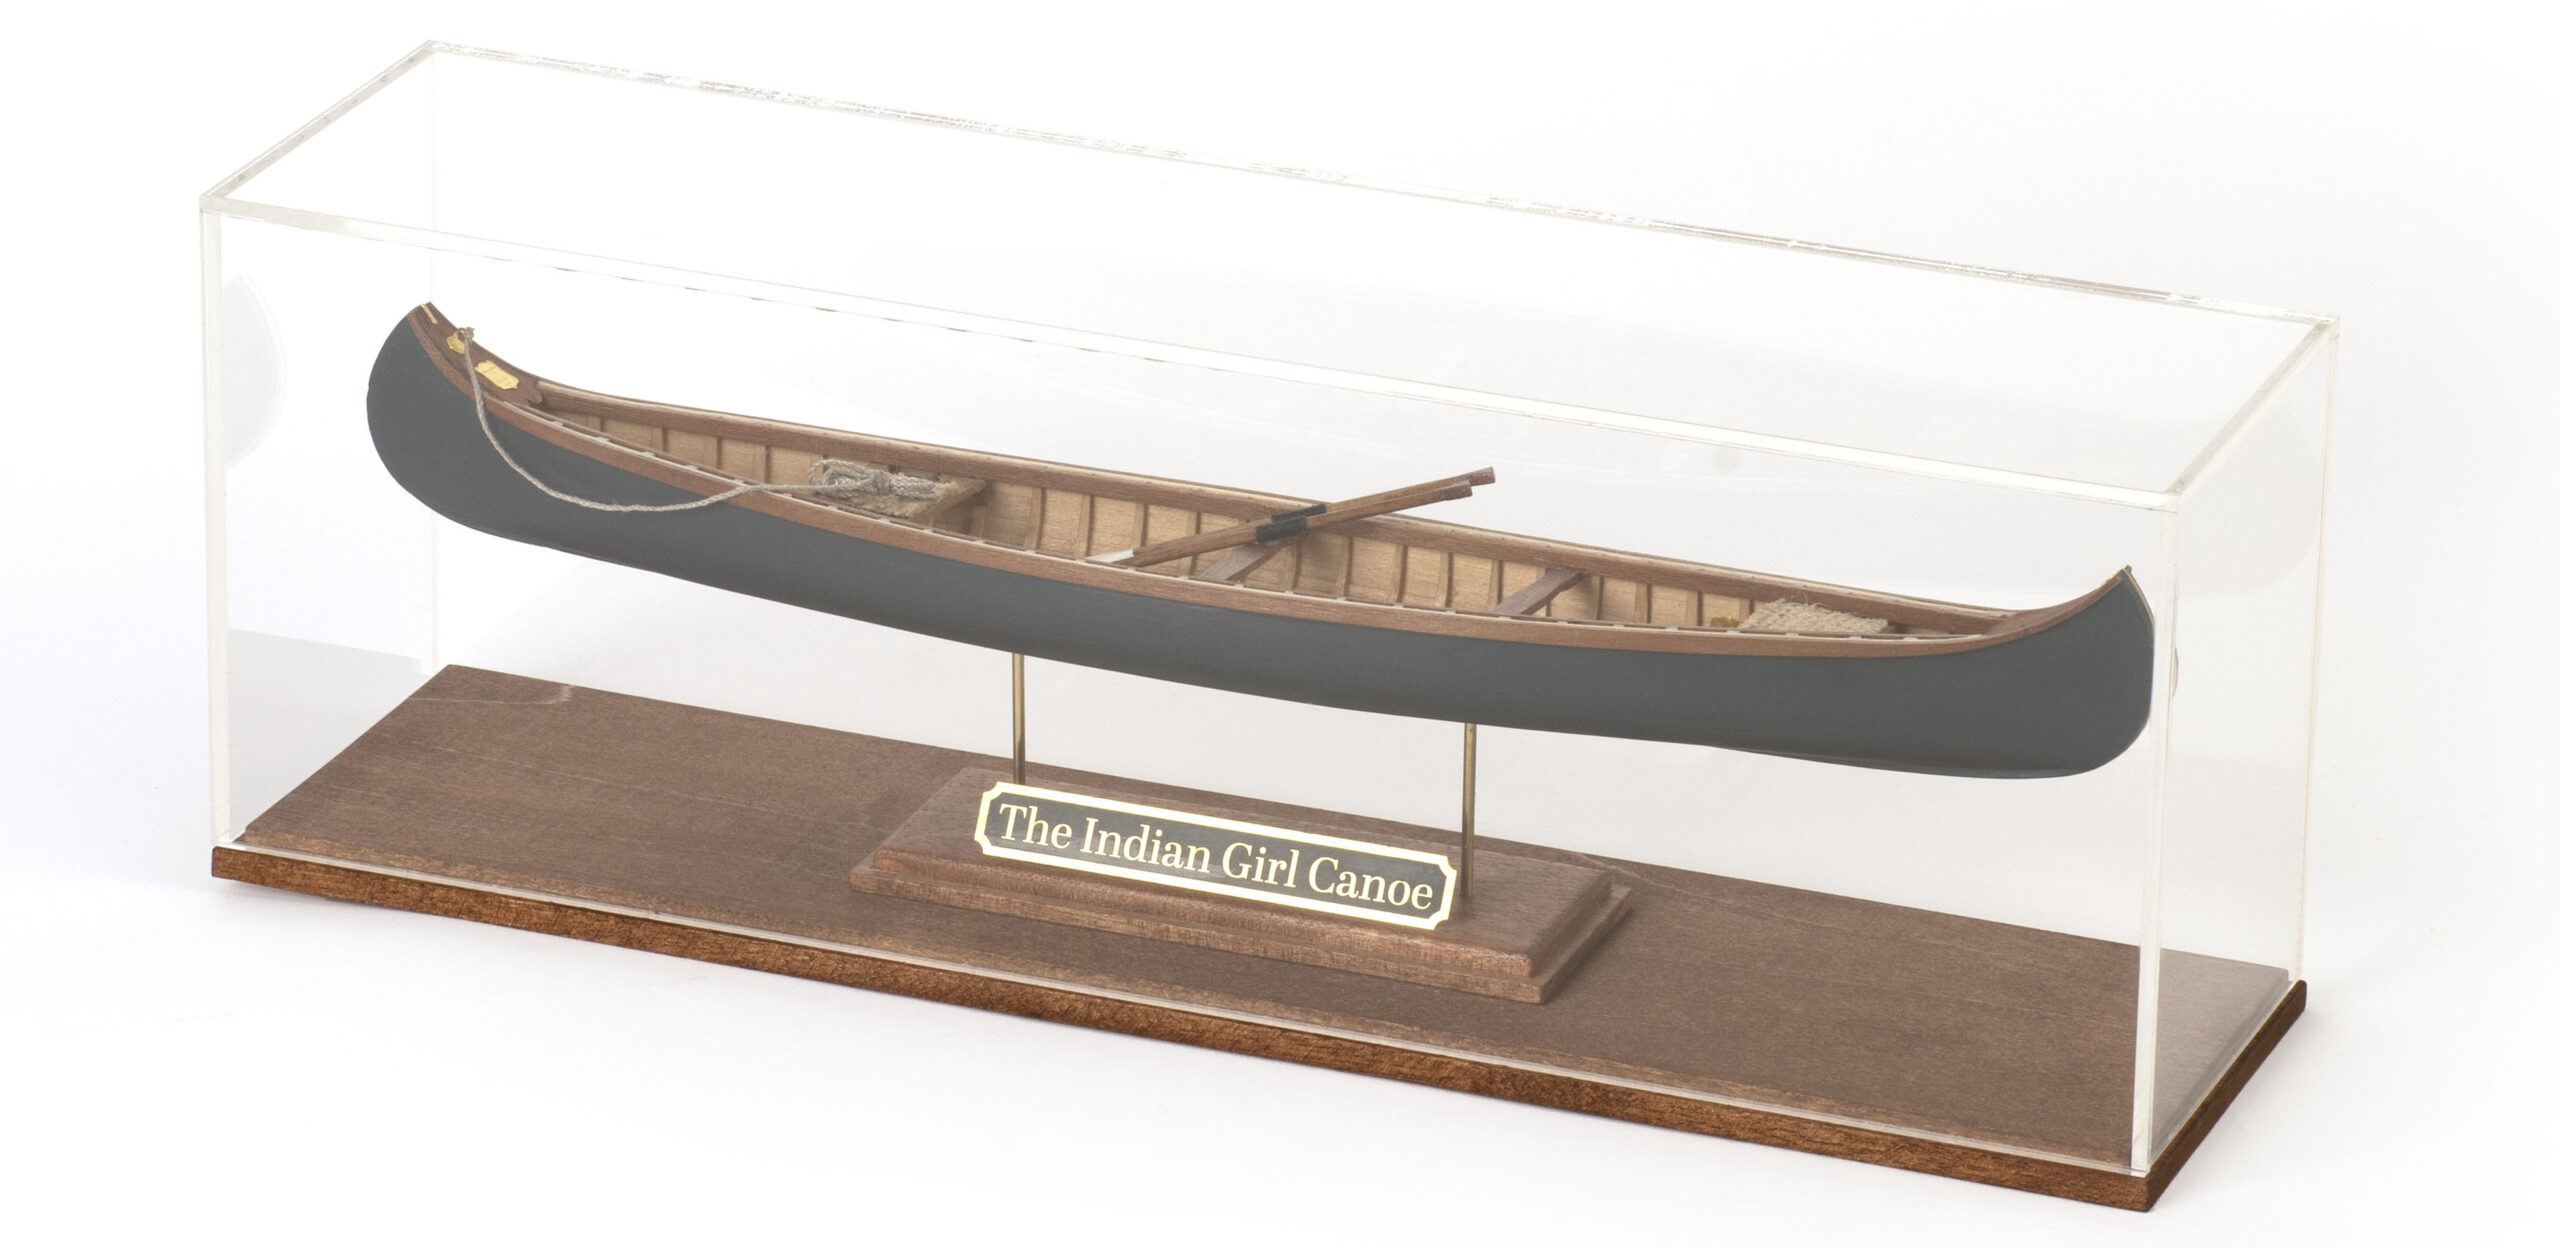 Urna de Metacrilato 3mm Grosor para Maqueta Indian Girl Canoe (19000-AS) de Artesanía Latina.